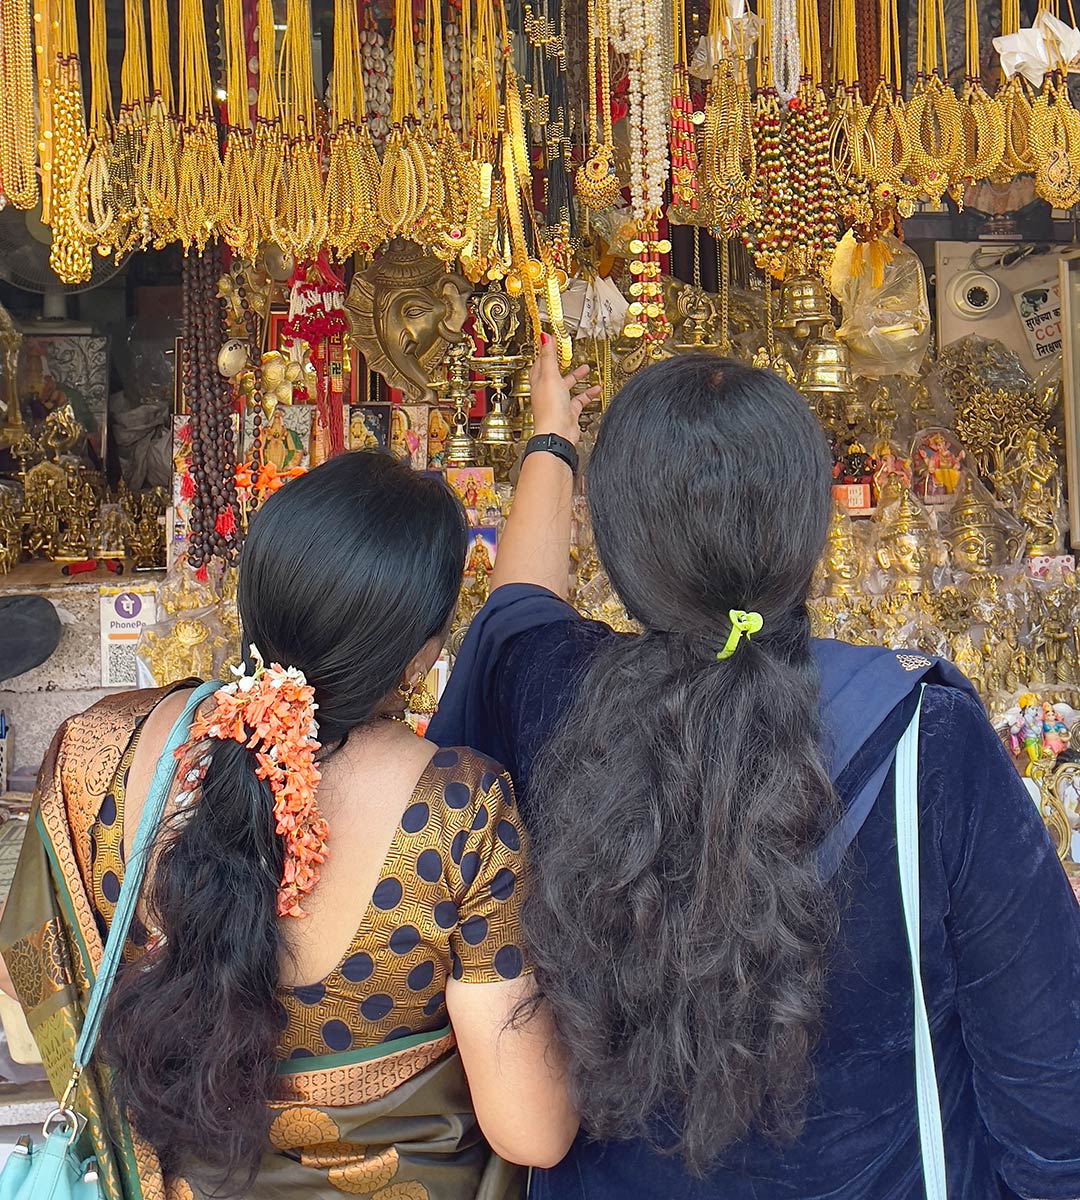 Mahalakshmi Tapınağı, Kolhapur. Hacı dükkânında dini ürünler satan kadınlar.